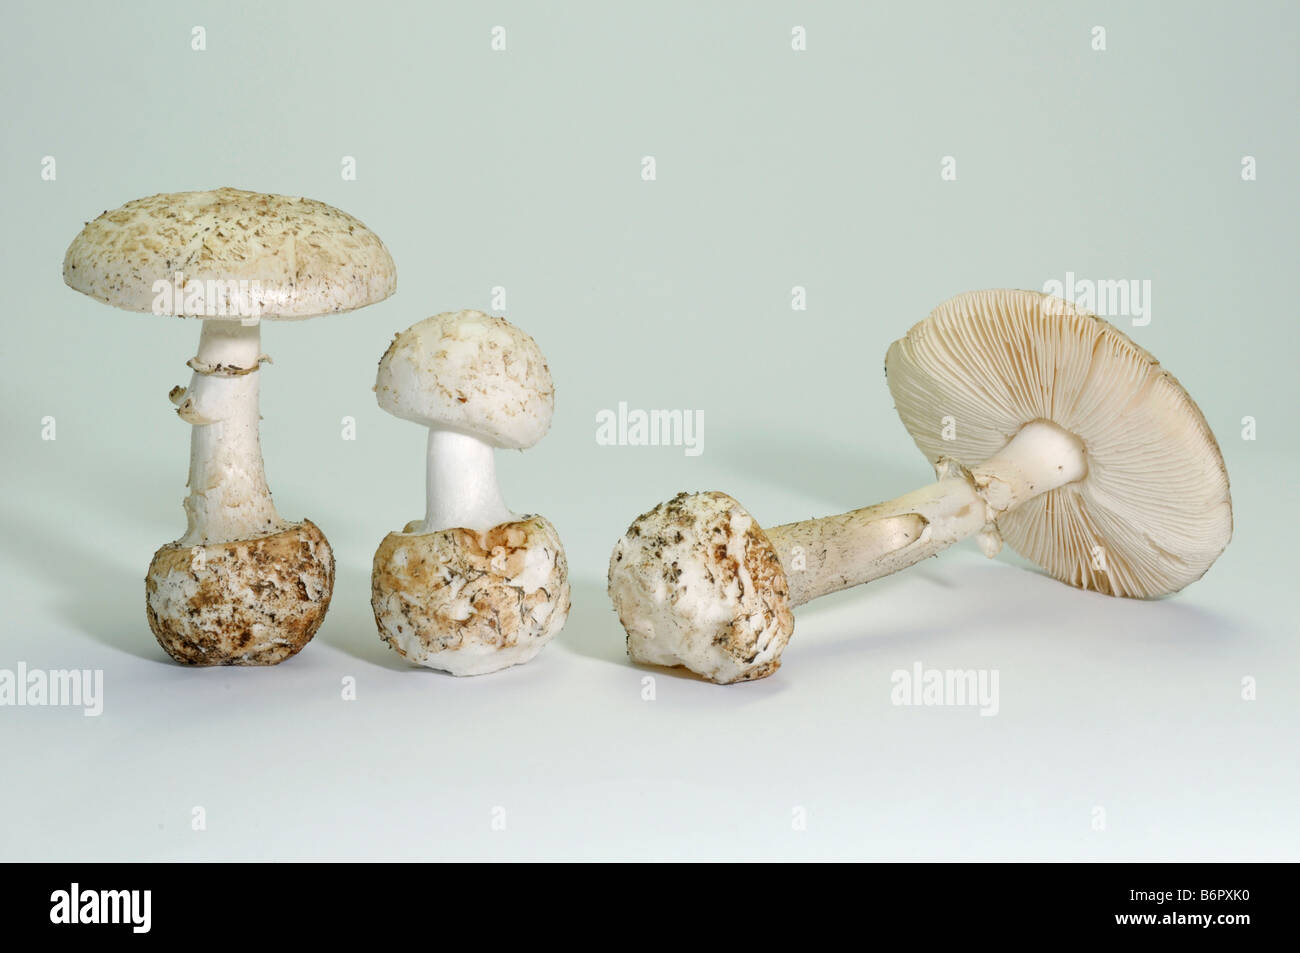 False Death Cap, Citron Amanita (Amanita citrina var. alba), fungi of different age, studio picture Stock Photo